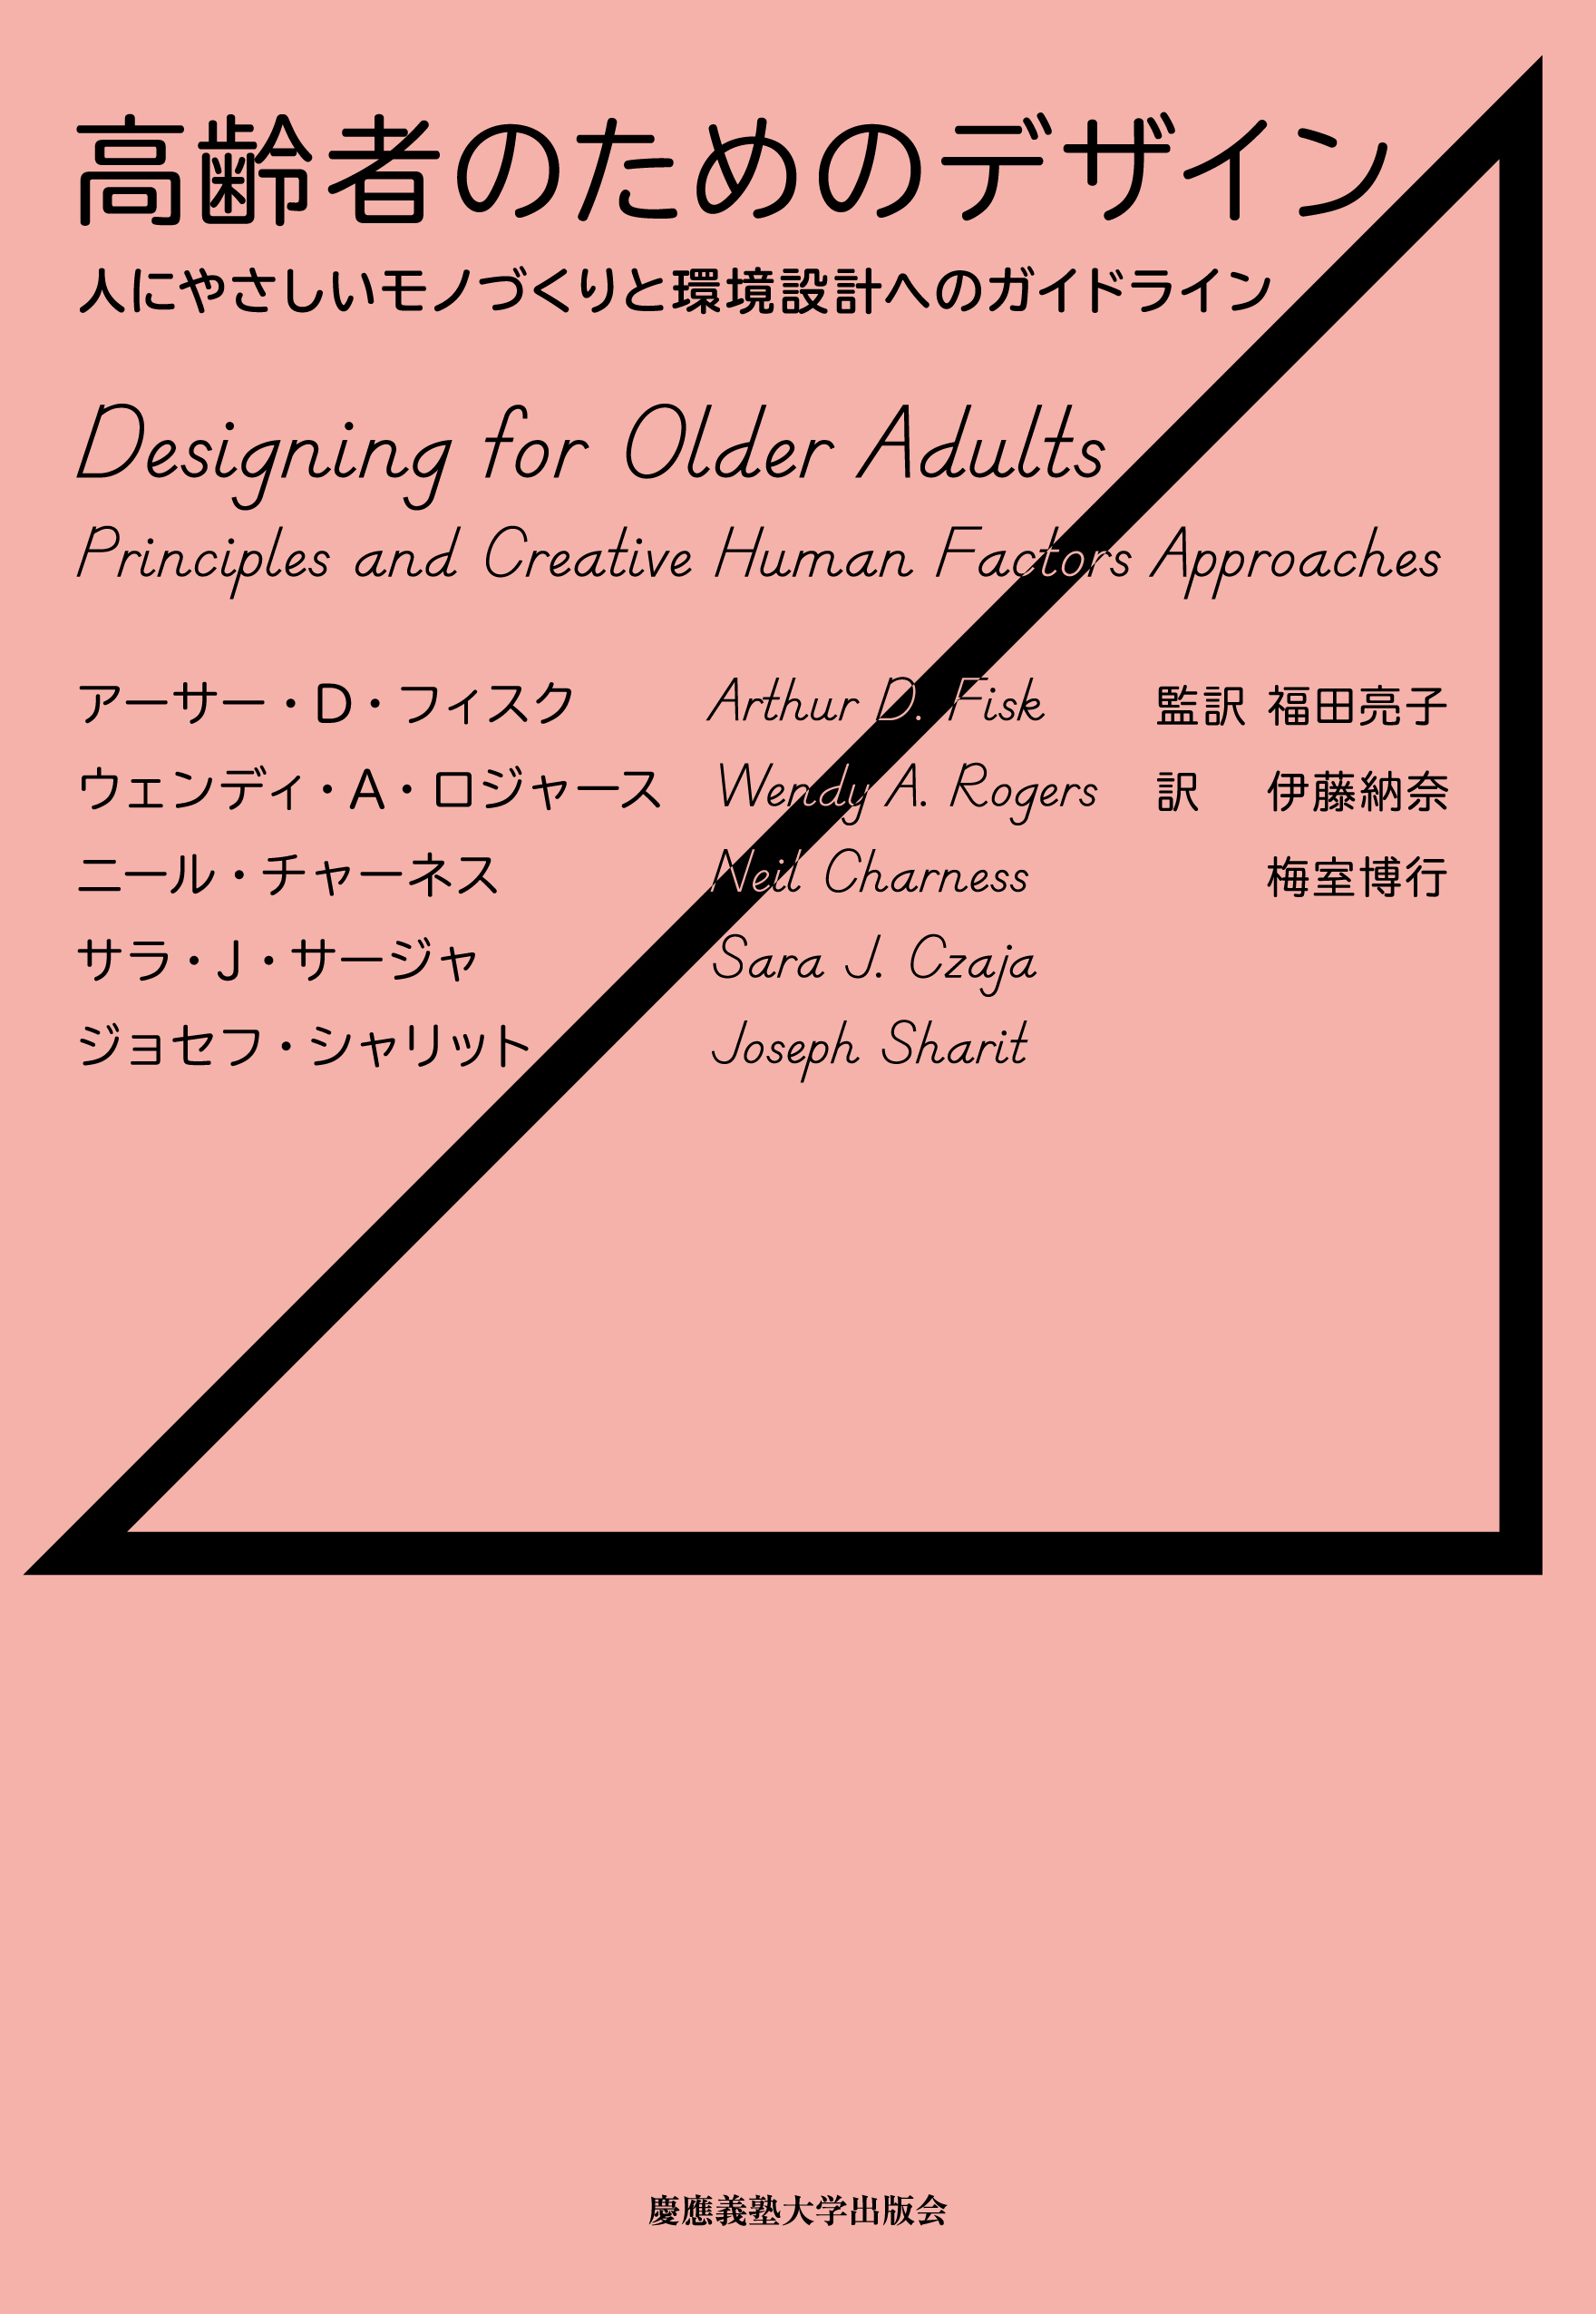 Designing for Older Adults (Japanese)